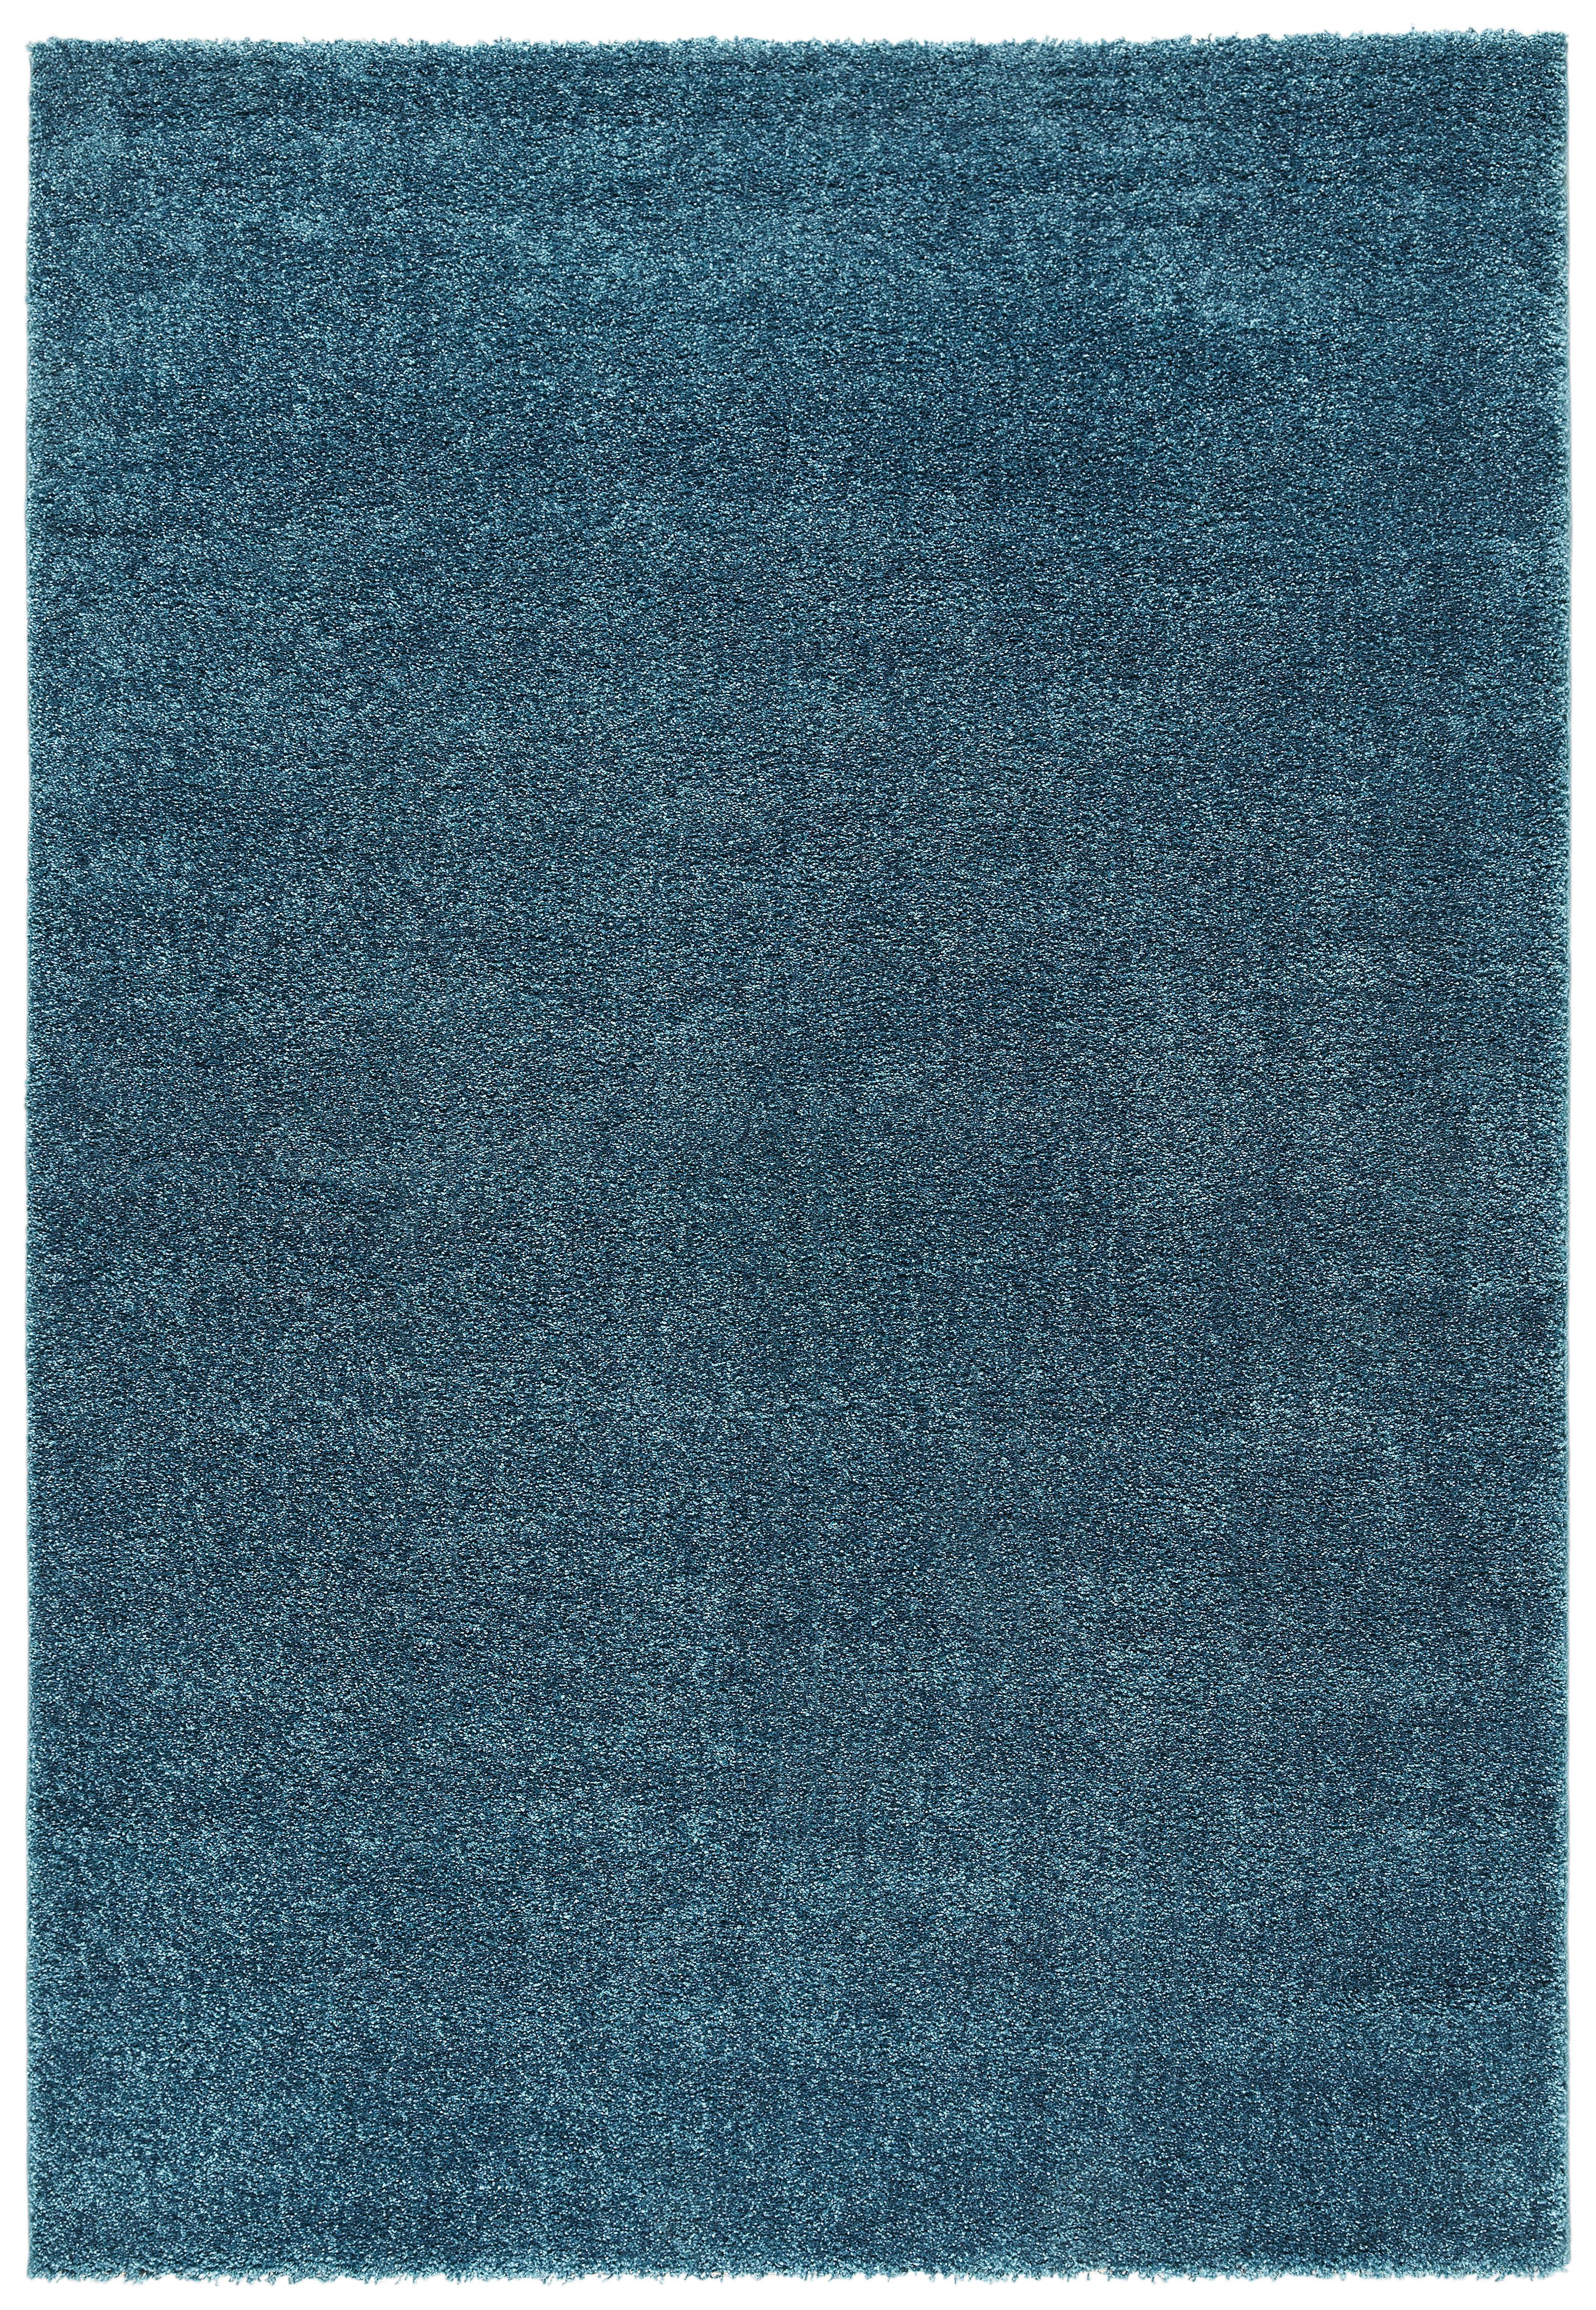 Tkaný Koberec Rubin 1, 80/150cm, Modrá - modrá, Moderný (80/150cm) - Modern Living